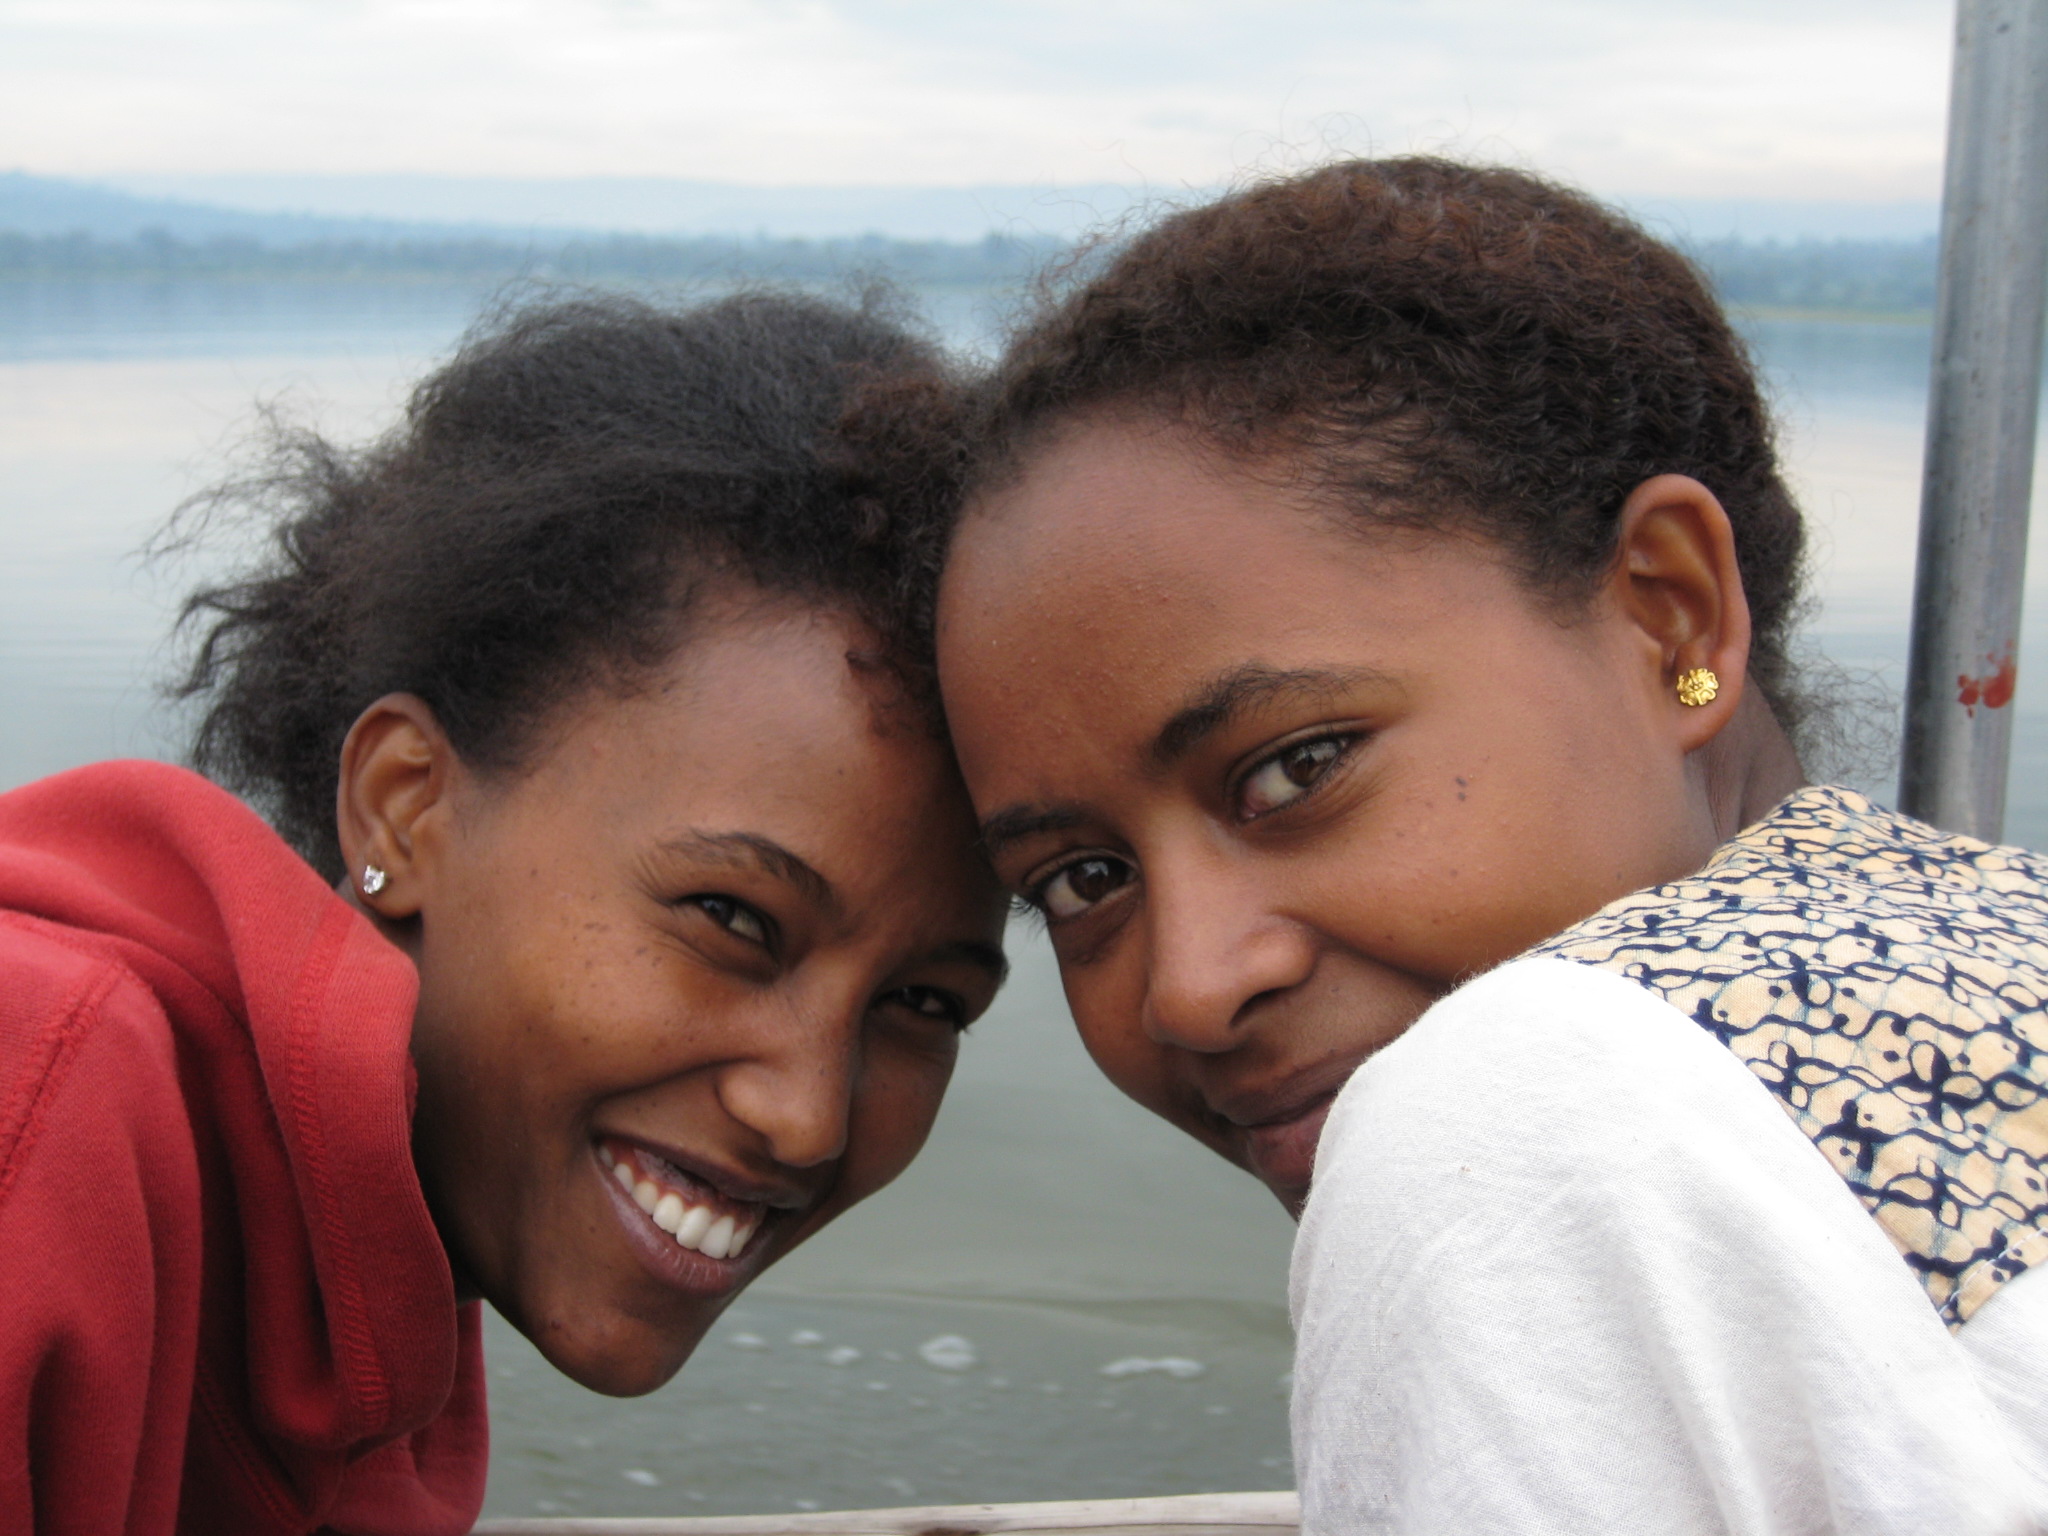 Etiopía: Apoyo a la formación de líderes juveniles